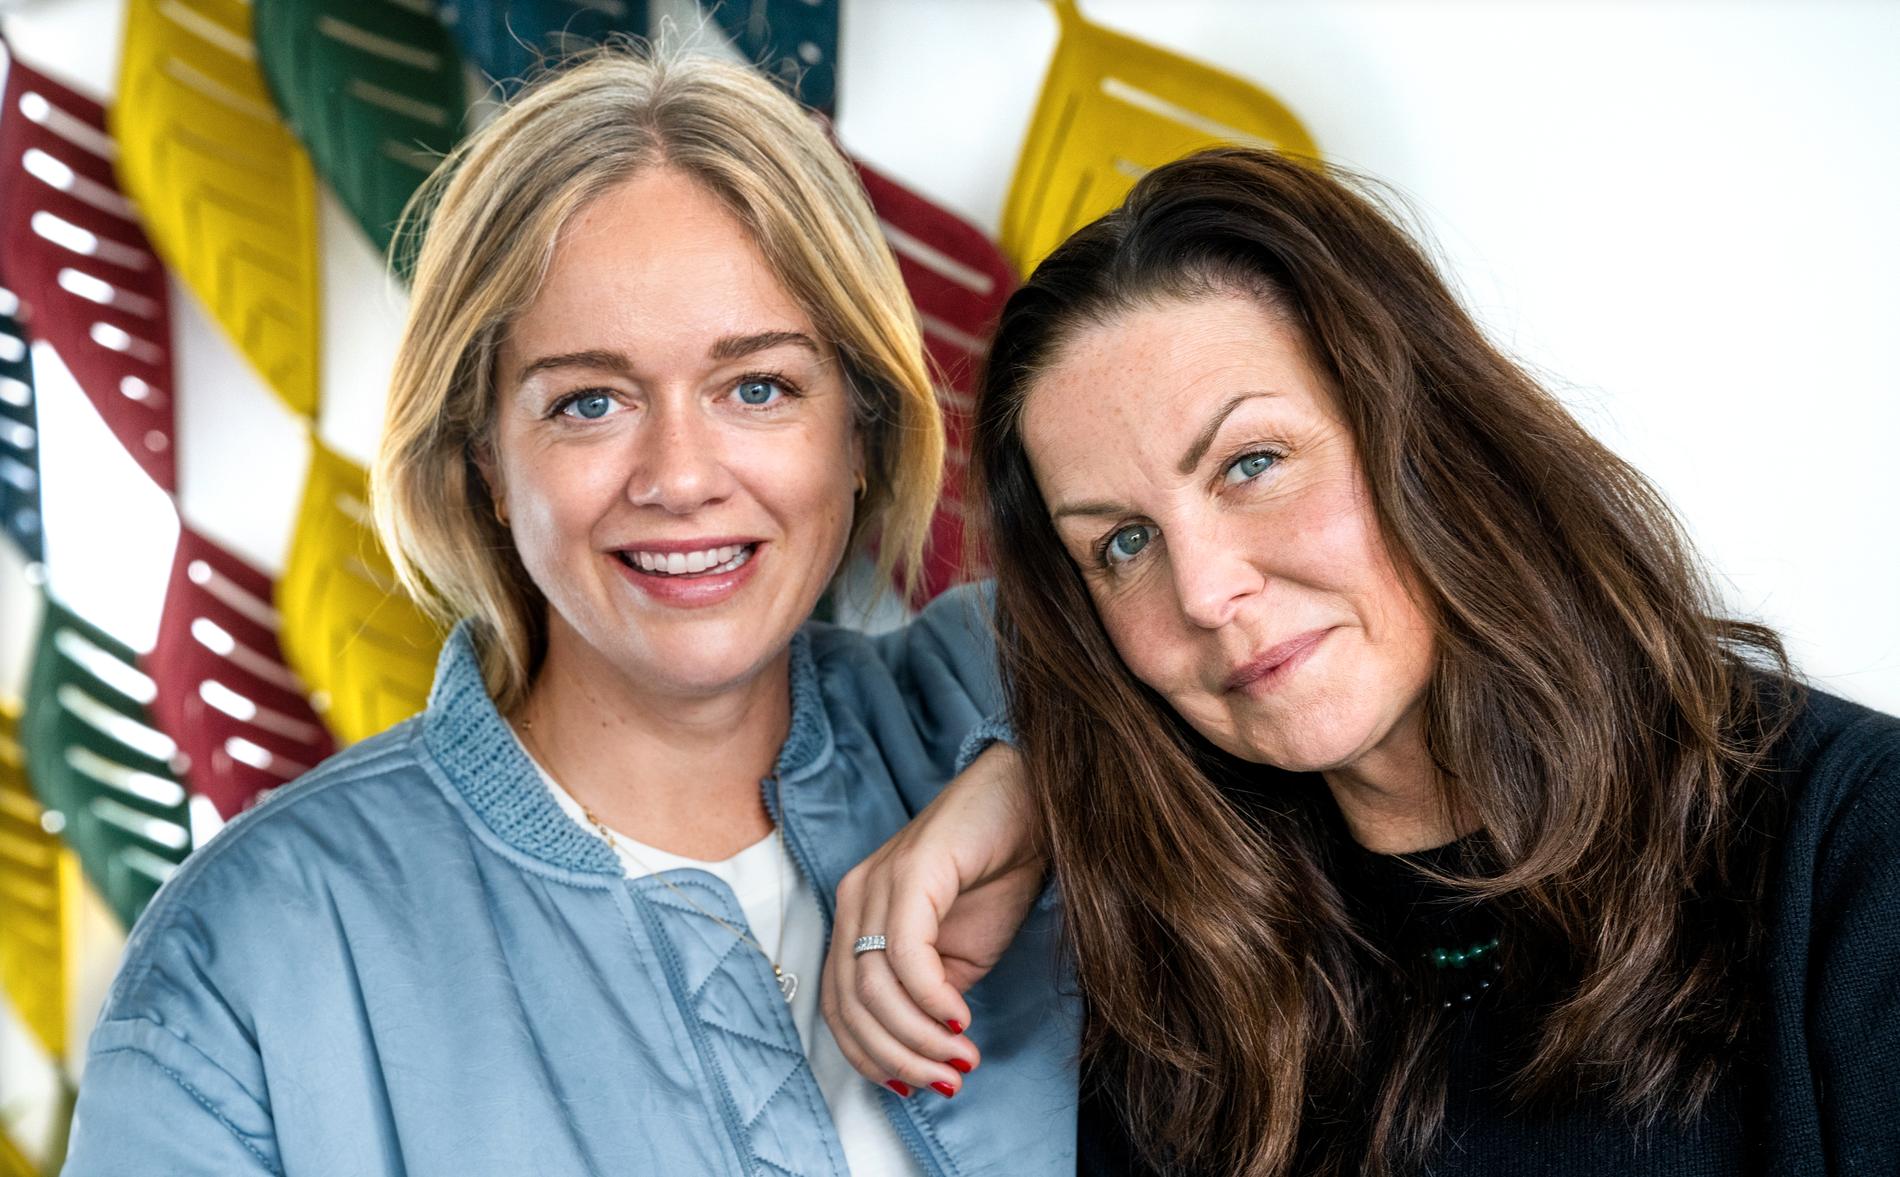 Ebba Kleberg von Sydow och Titti Schultz är programledare för Sveriges Radios nya podcast "Monarkerna".